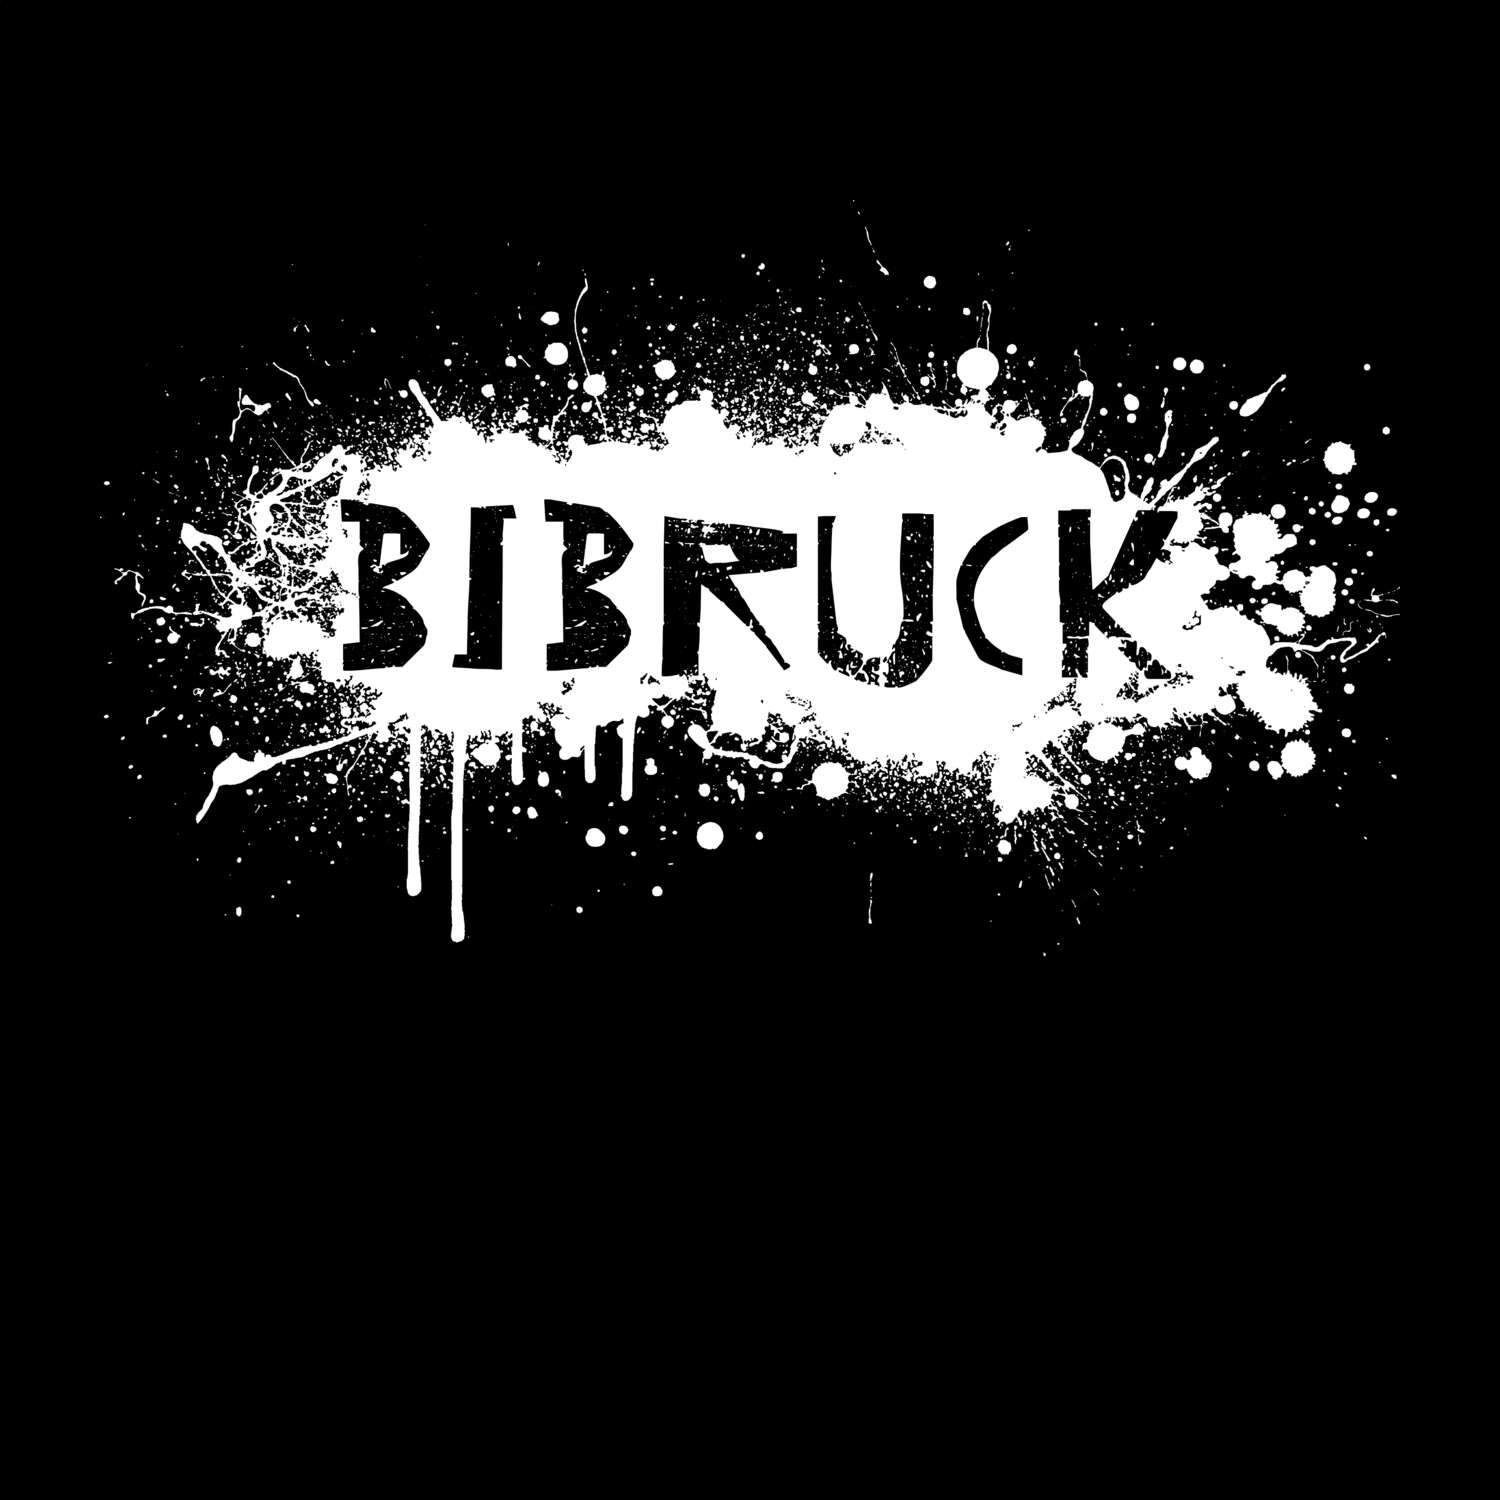 Bibruck T-Shirt »Paint Splash Punk«